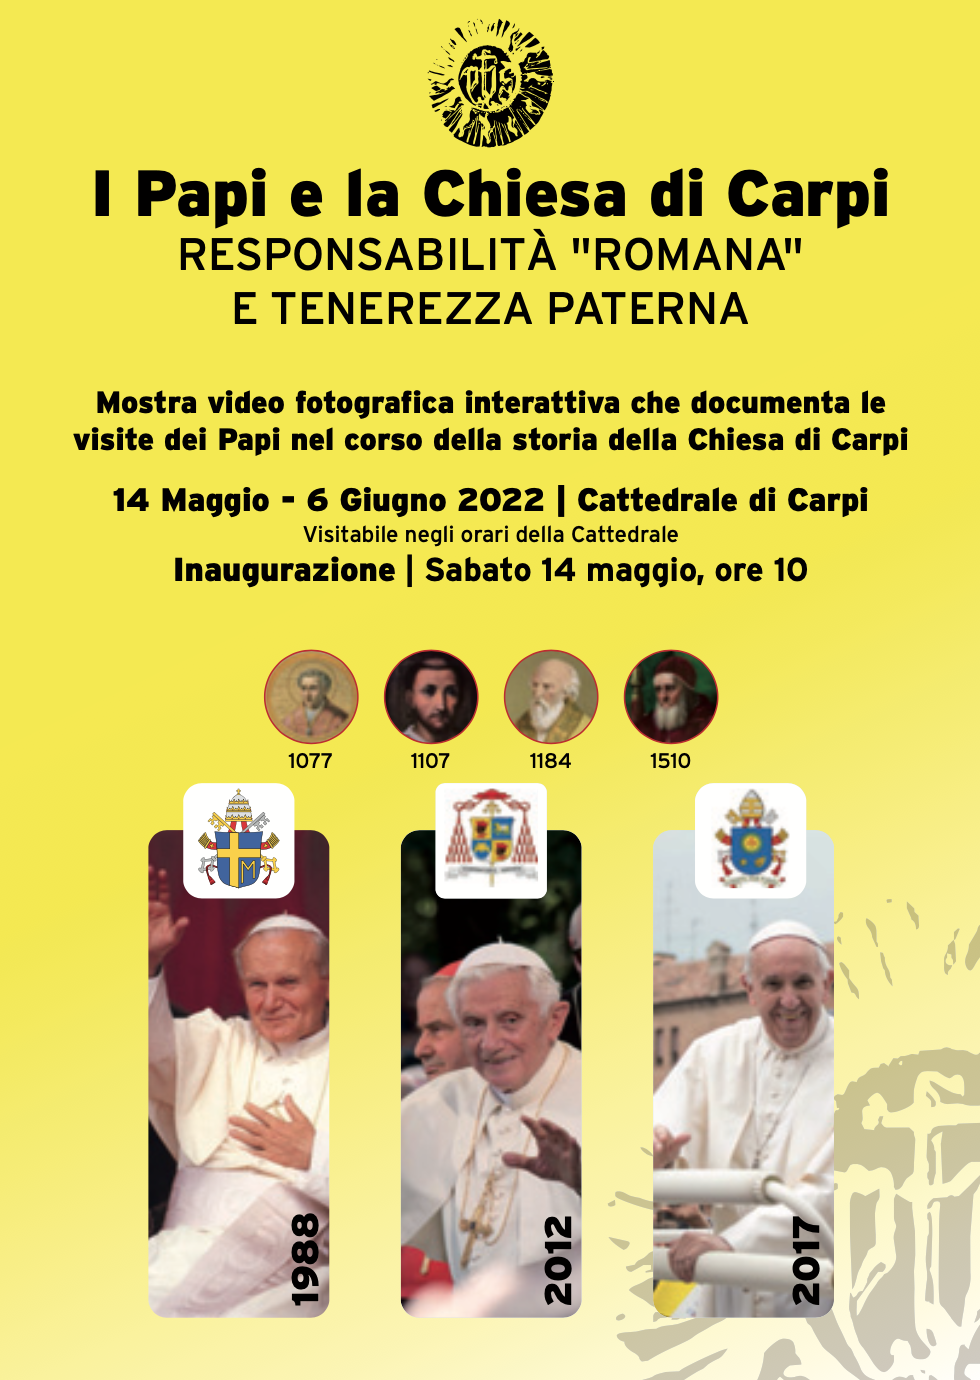 I Papi e la Chiesa di Carpi: la mostra fino al 19 giugno in Cattedrale